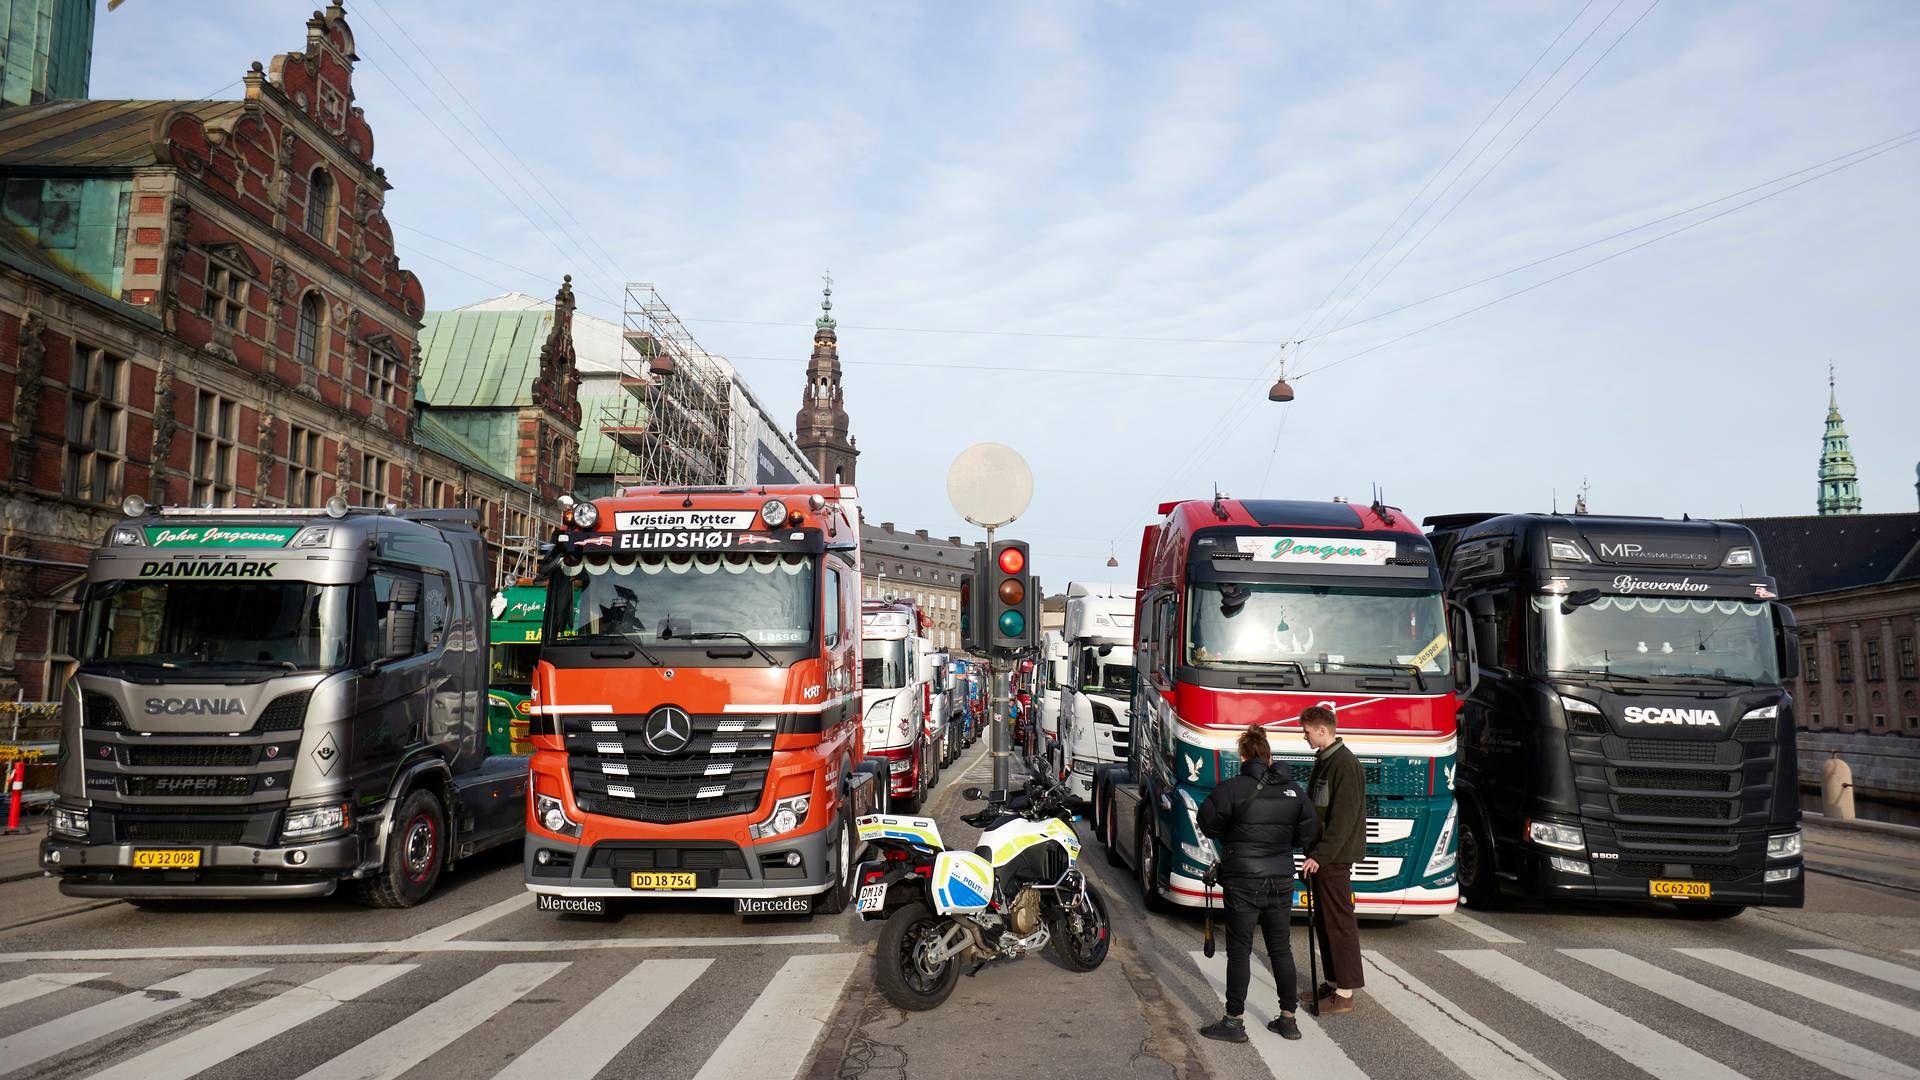 Sidste protestaktion mod kilometerafgiften fandt sted på Christiansborg inden påske. | Foto: Jens Dresling